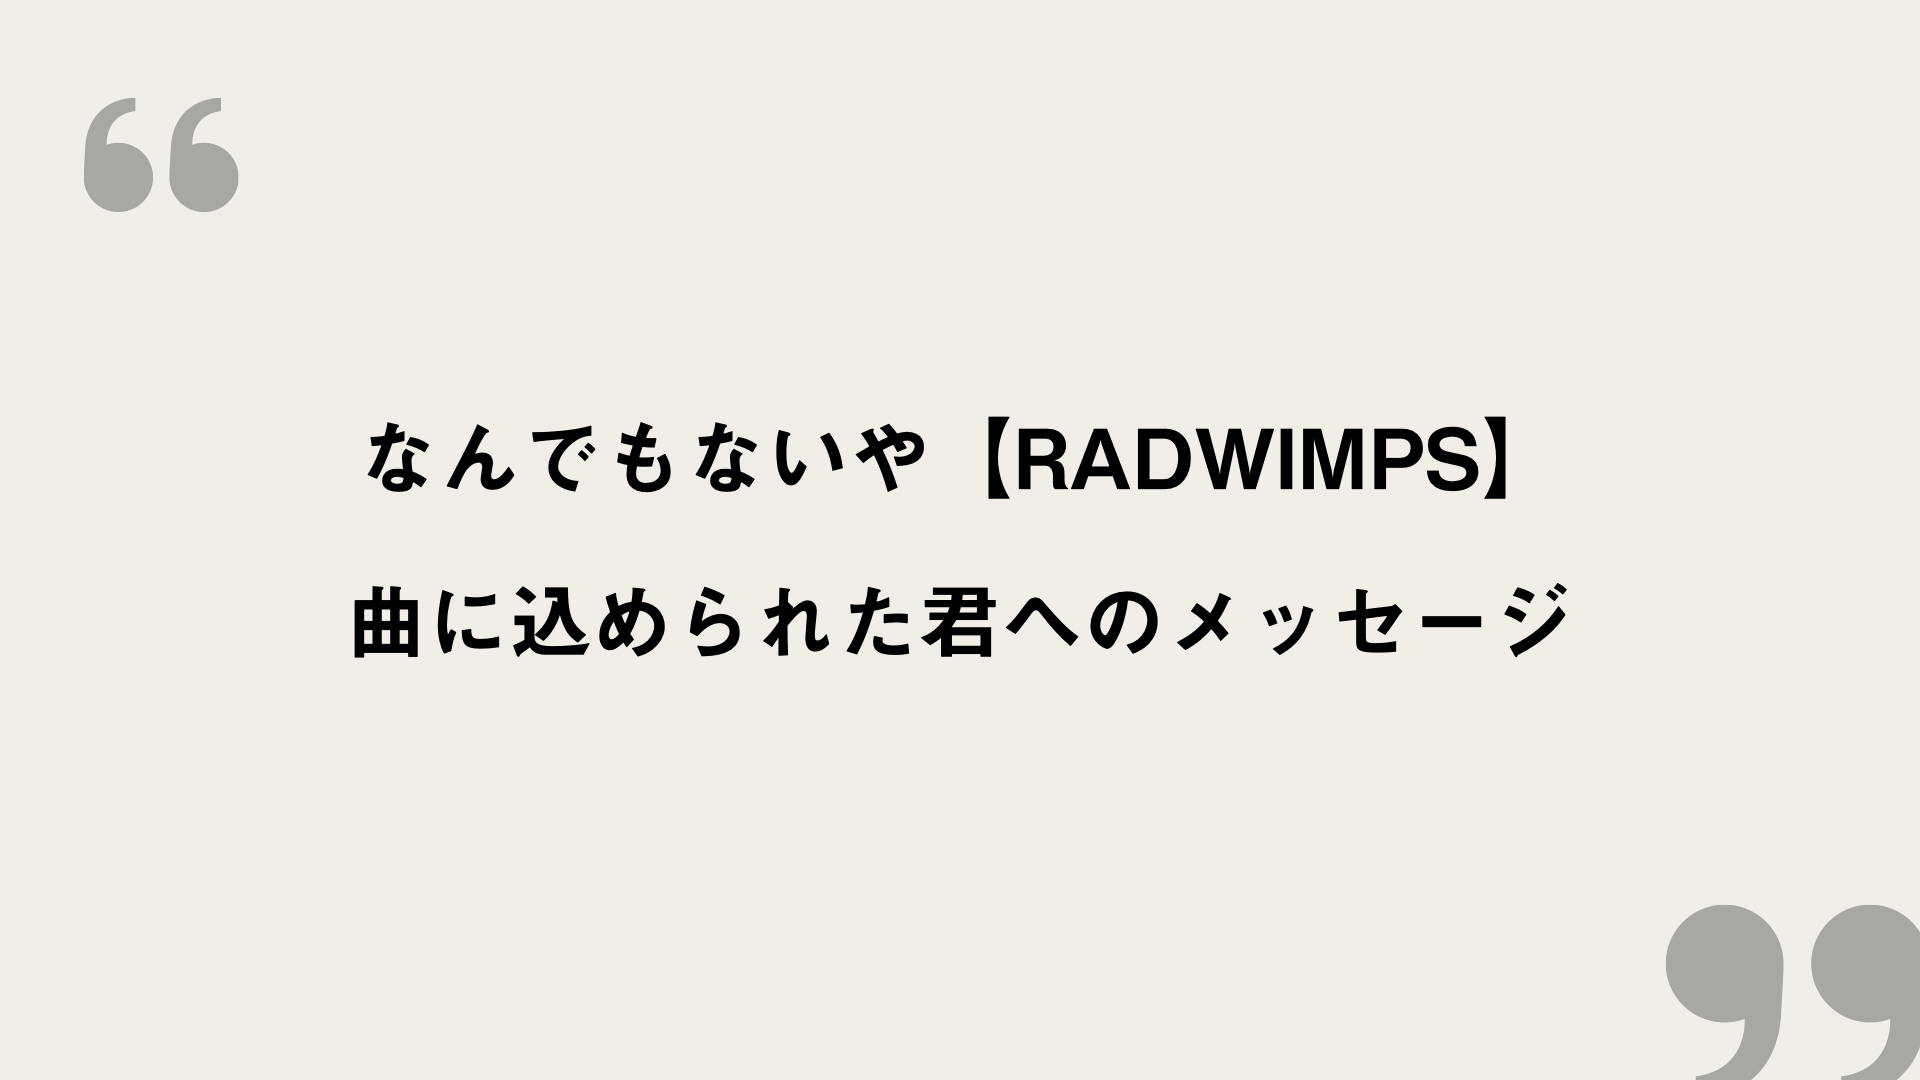 なんでもないや Radwimps 歌詞の意味を考察 曲に込められた君へのメッセージ Framu Media